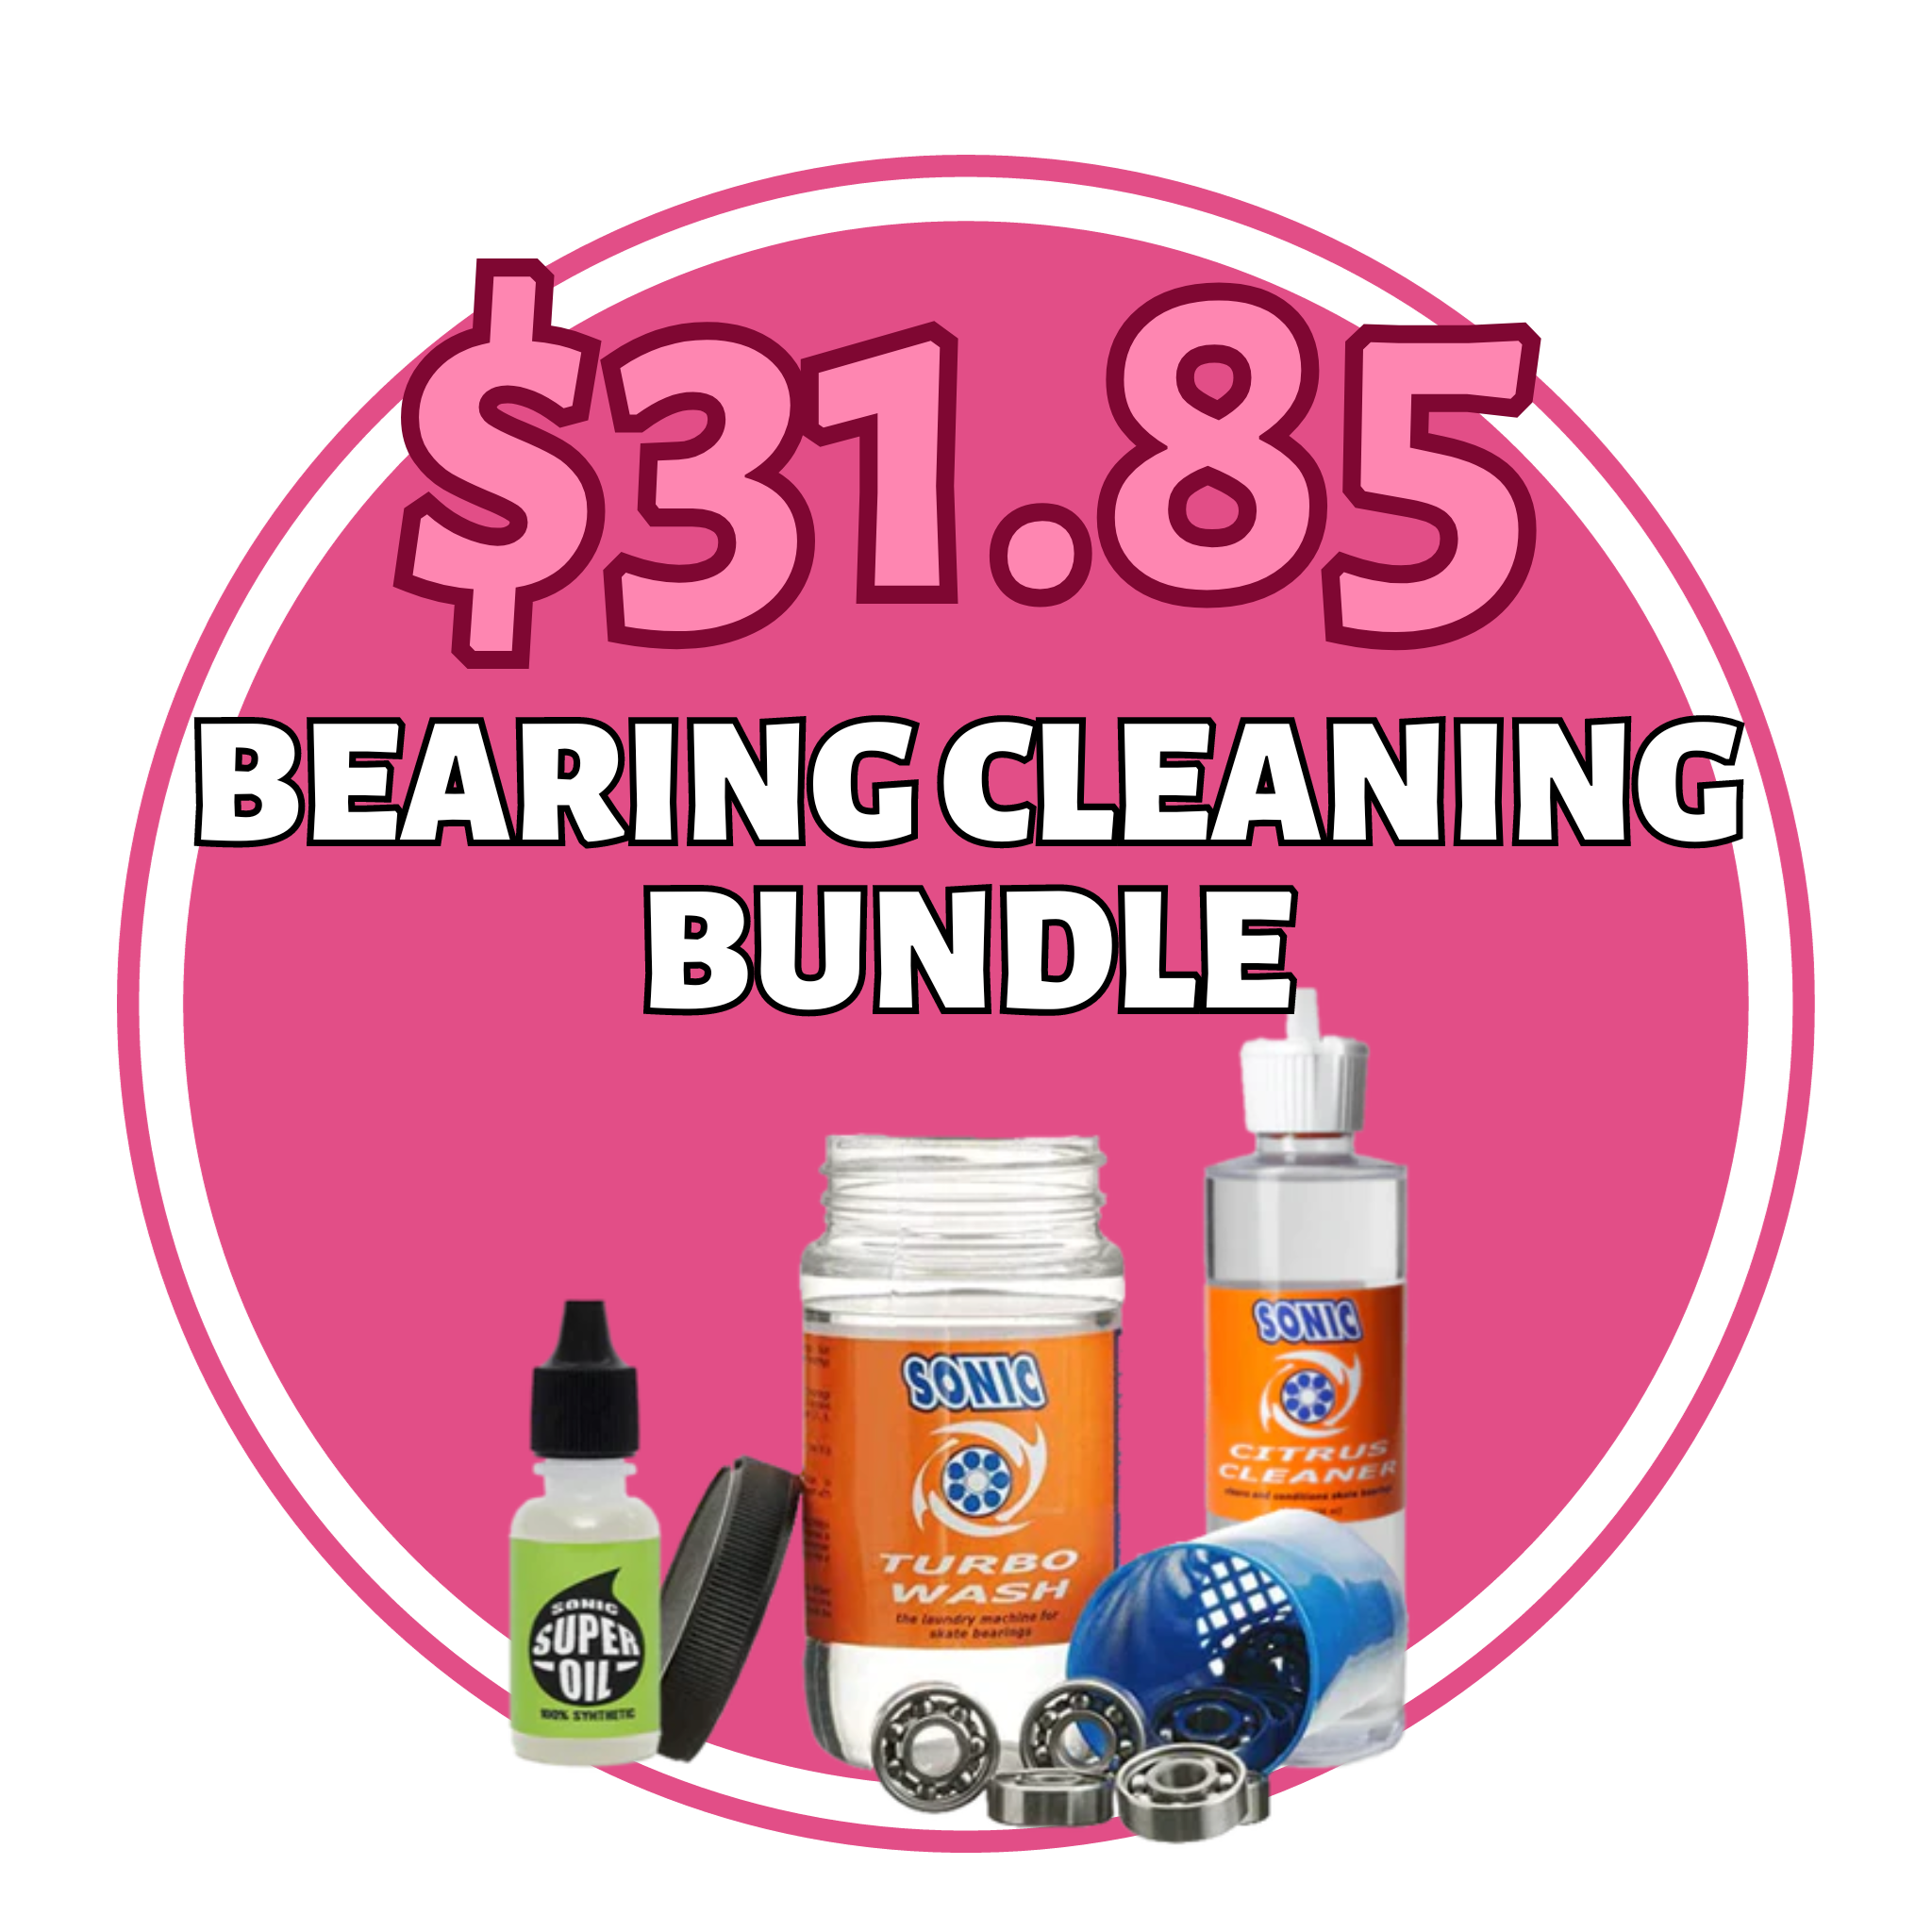 $31.85 bearing cleaning bundle